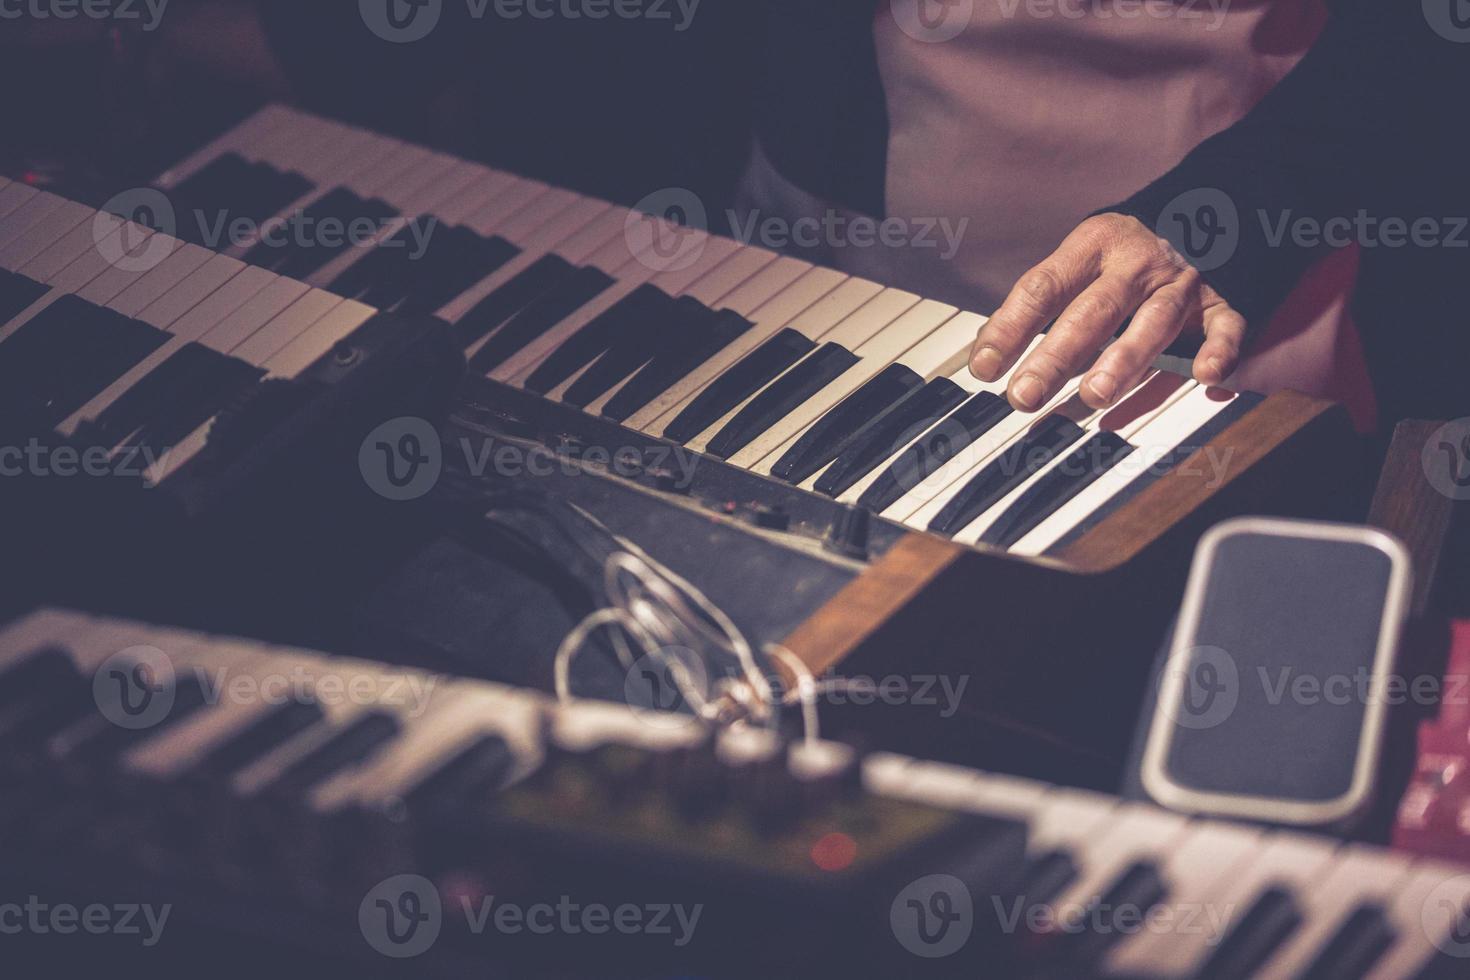 músico tocando un teclado de sintetizador vintage foto